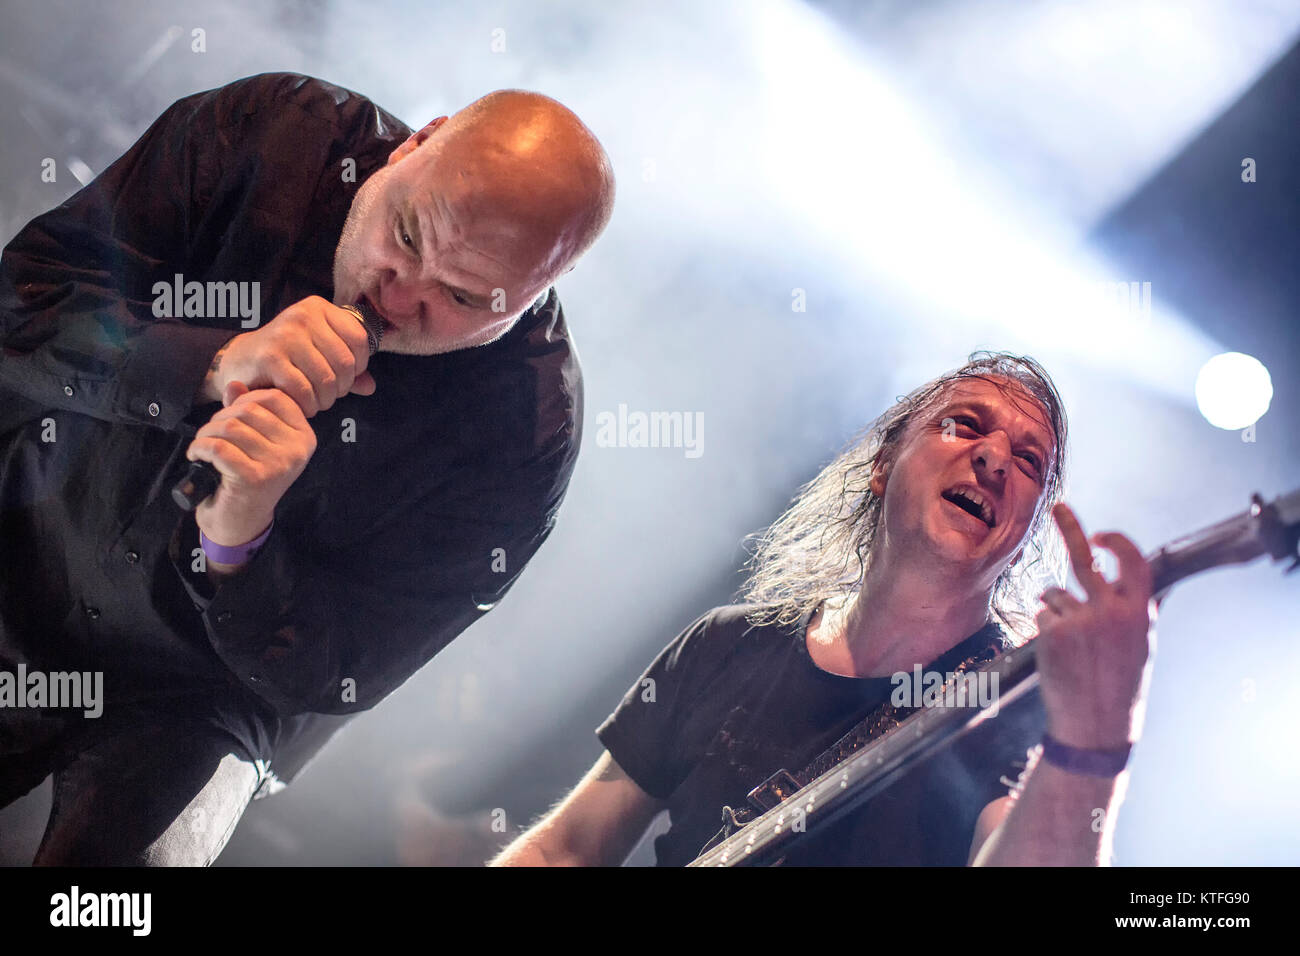 Il Norvegese black metal band Mayhem esegue un concerto dal vivo presso il Rockefeller come parte del festival Inferno Metal Festival 2016 a Oslo. Qui il bassista Necrobutcher è visto dal vivo sul palco con ex cantante Messia. Norvegia, 27/03 2016. Foto Stock